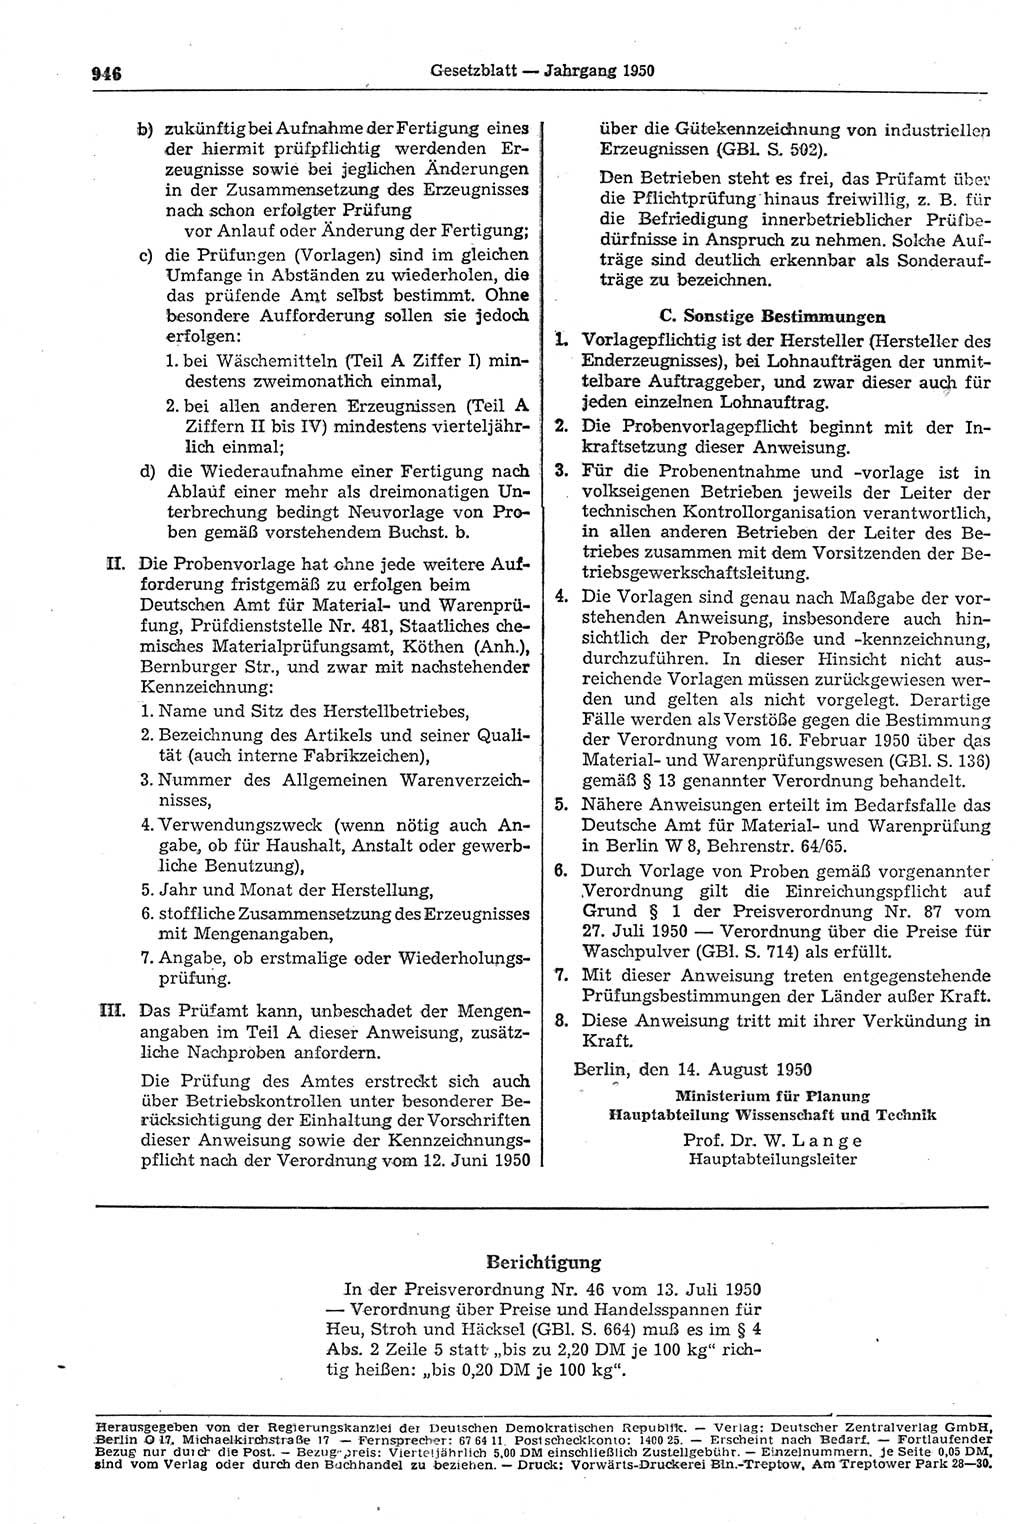 Gesetzblatt (GBl.) der Deutschen Demokratischen Republik (DDR) 1950, Seite 946 (GBl. DDR 1950, S. 946)